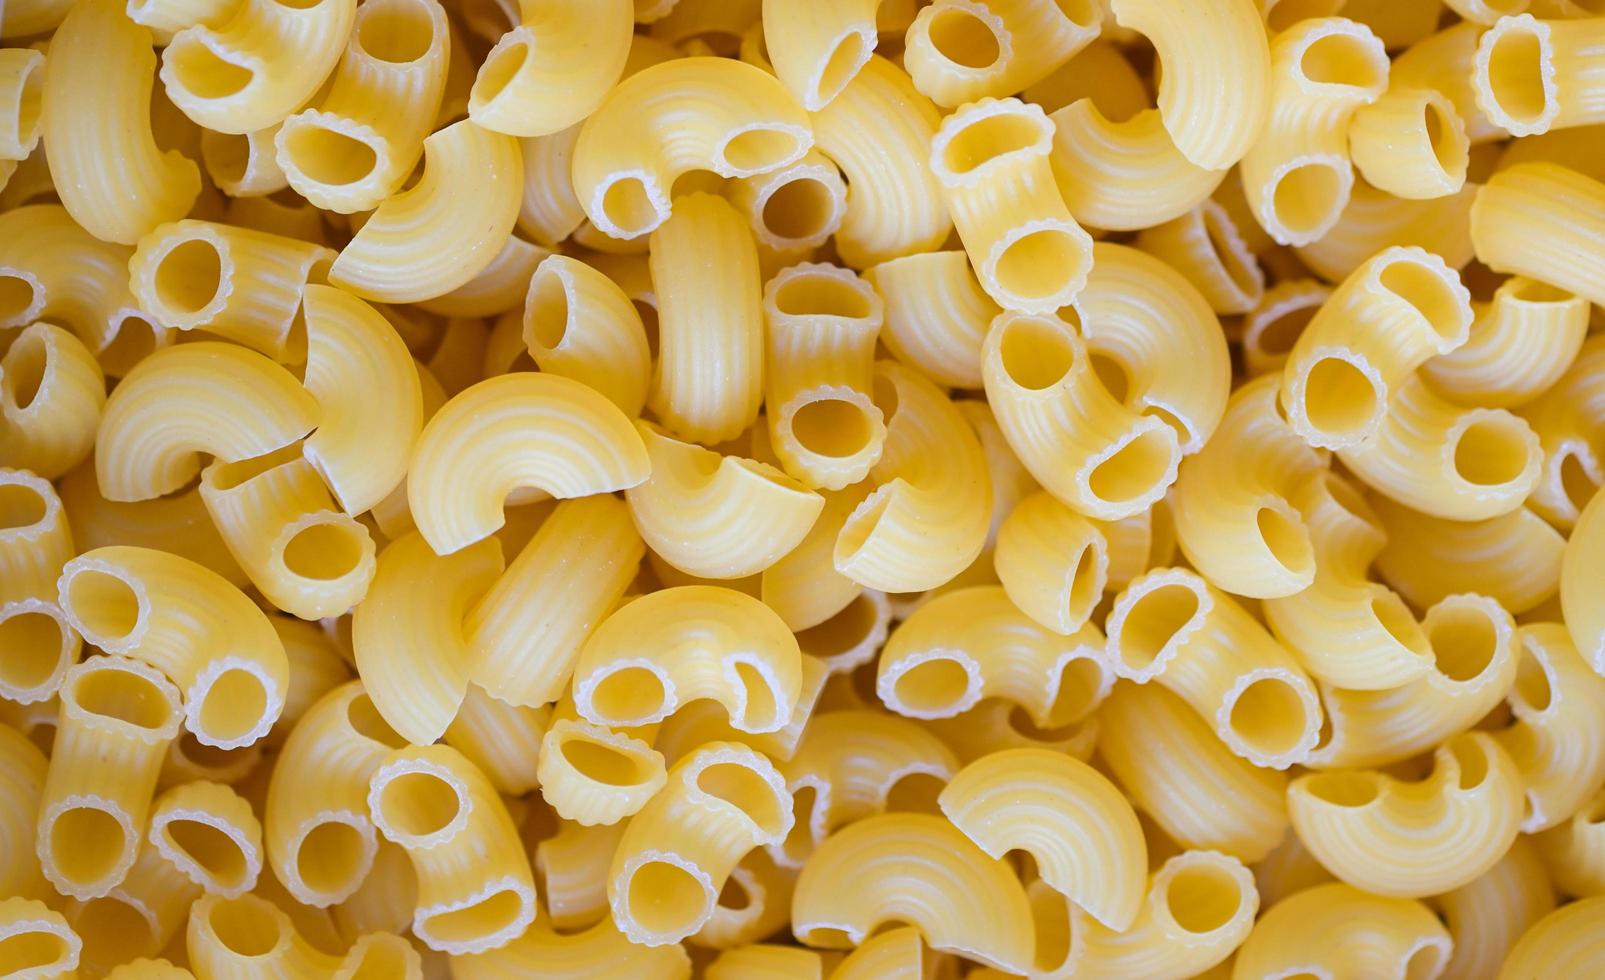 pasta achtergrond, rauw macaroni structuur achtergrond, dichtbij omhoog rauw macaroni pasta ongekookt heerlijk pasta voor Koken voedsel foto